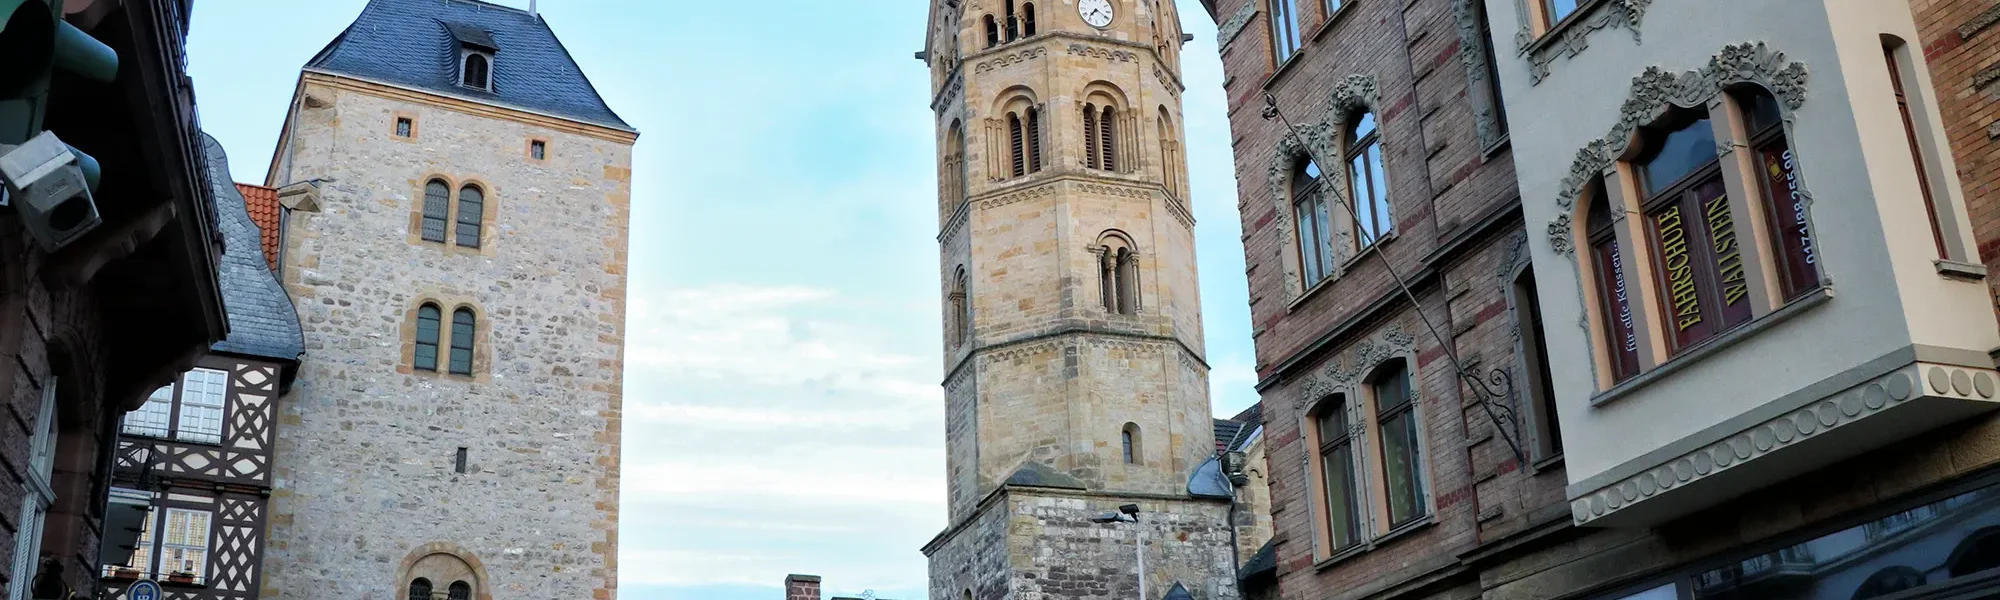 Eisenach, Duitsland - Nikolaikirche en Nikolaitor